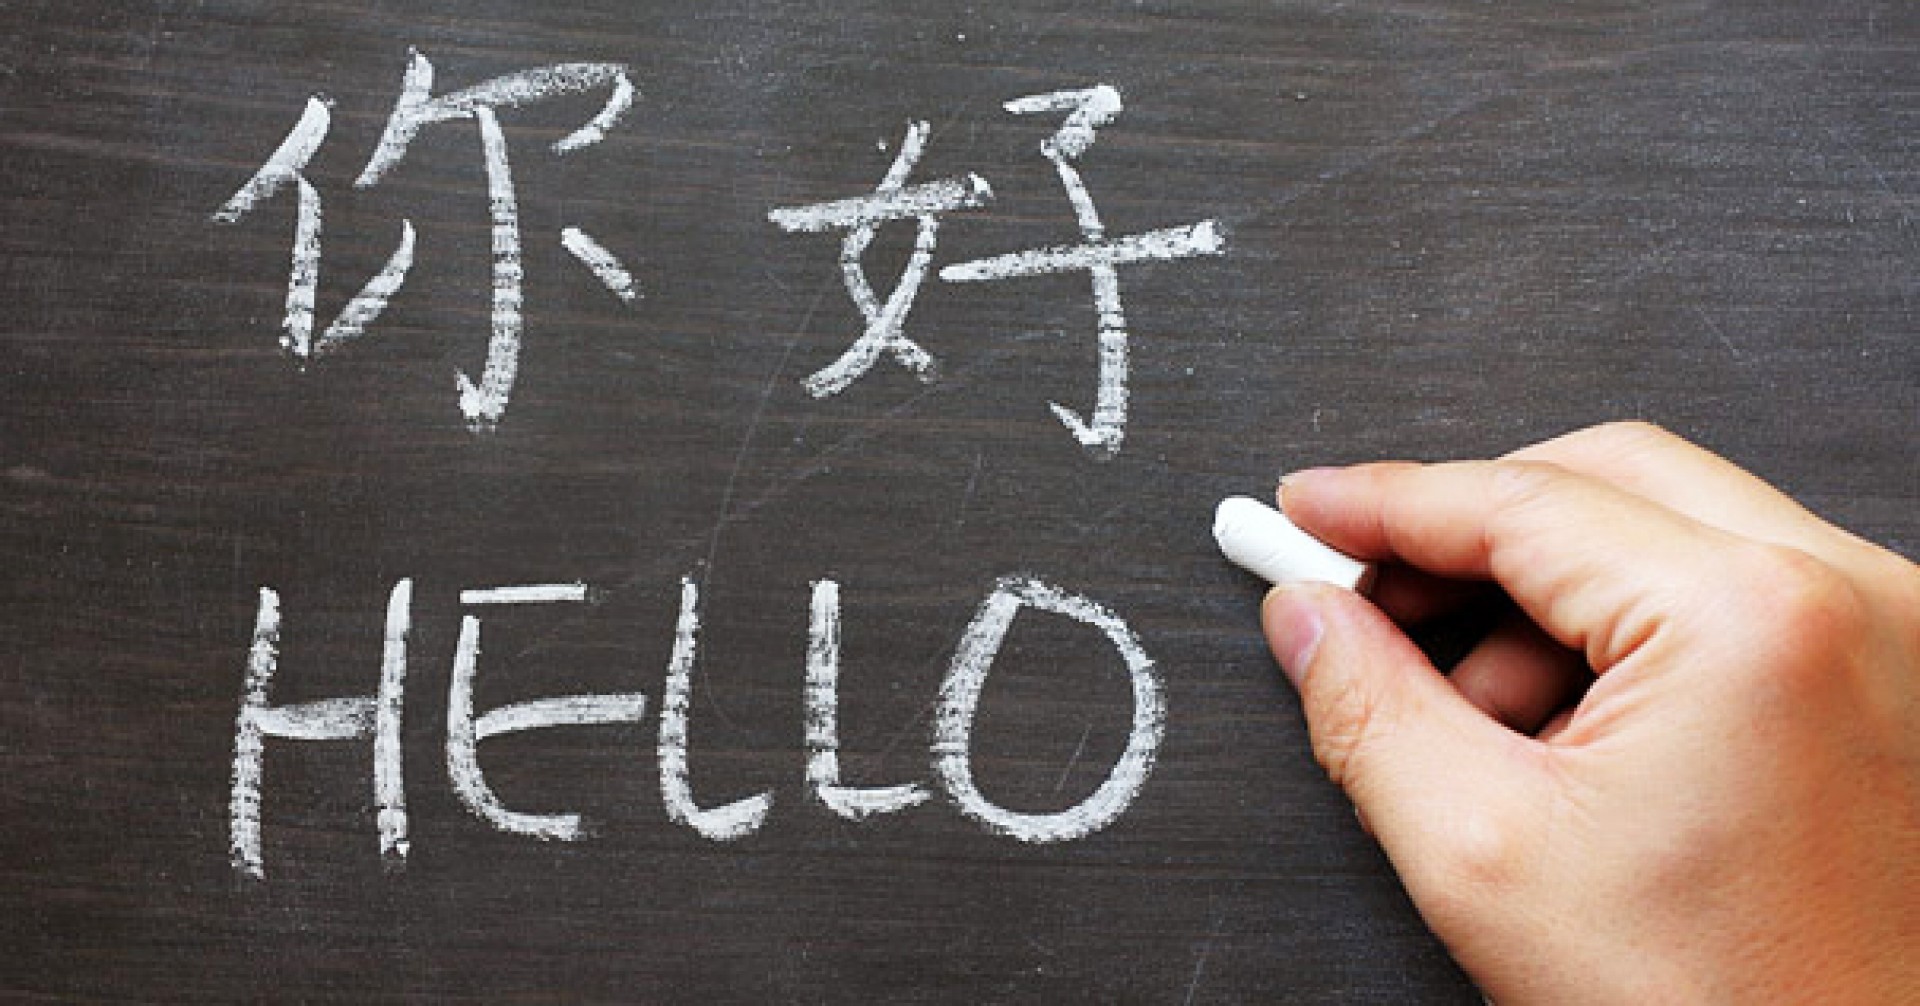 Không phải tiếng Việt, tiếng Hoa mới chính là ngôn ngữ có cấu trúc câu giống tiếng Anh!